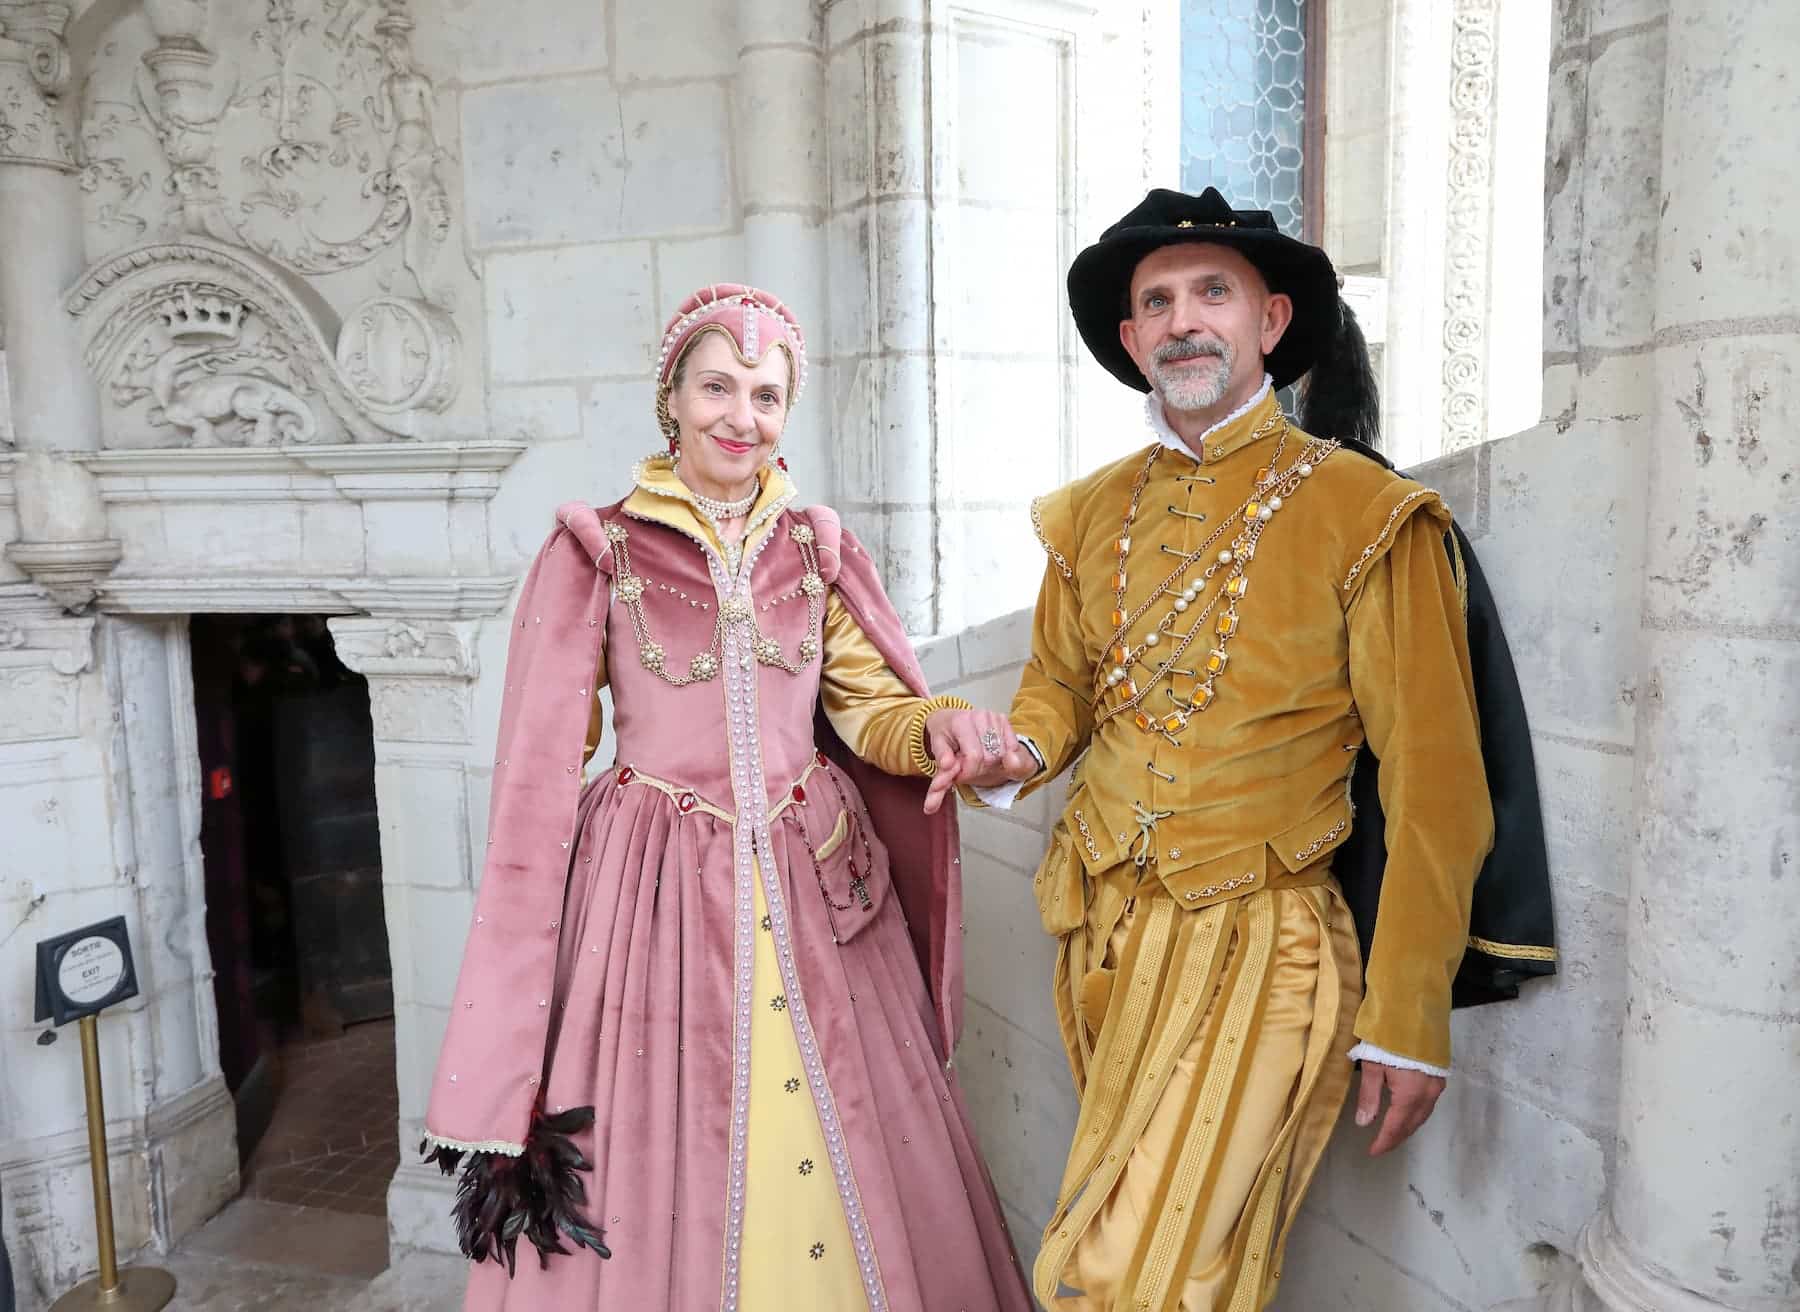 Festivités de cour au château royal de Blois